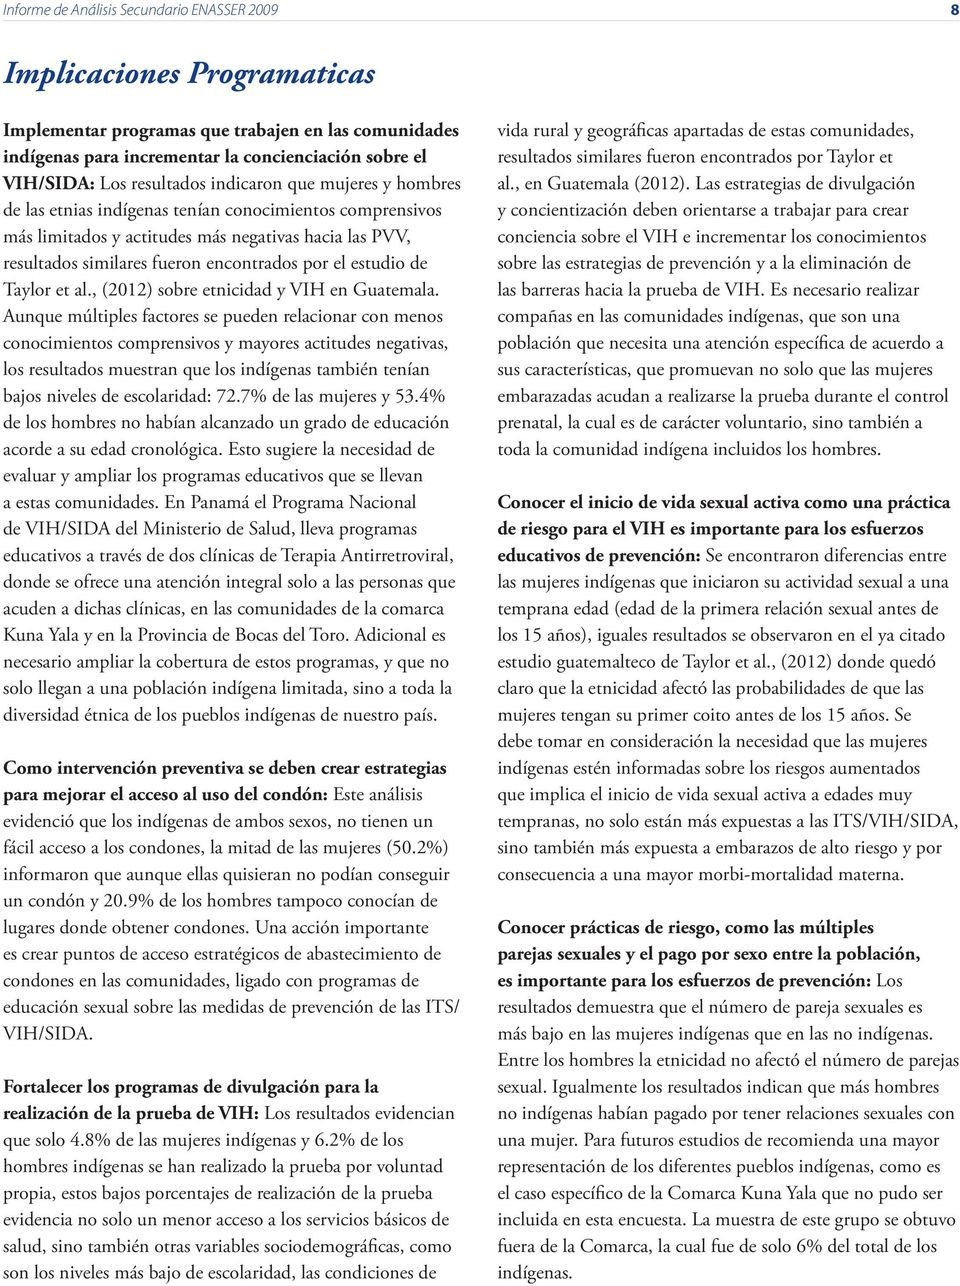 el estudio de Taylor et al., (12) sobre etnicidad y VIH en Guatemala.